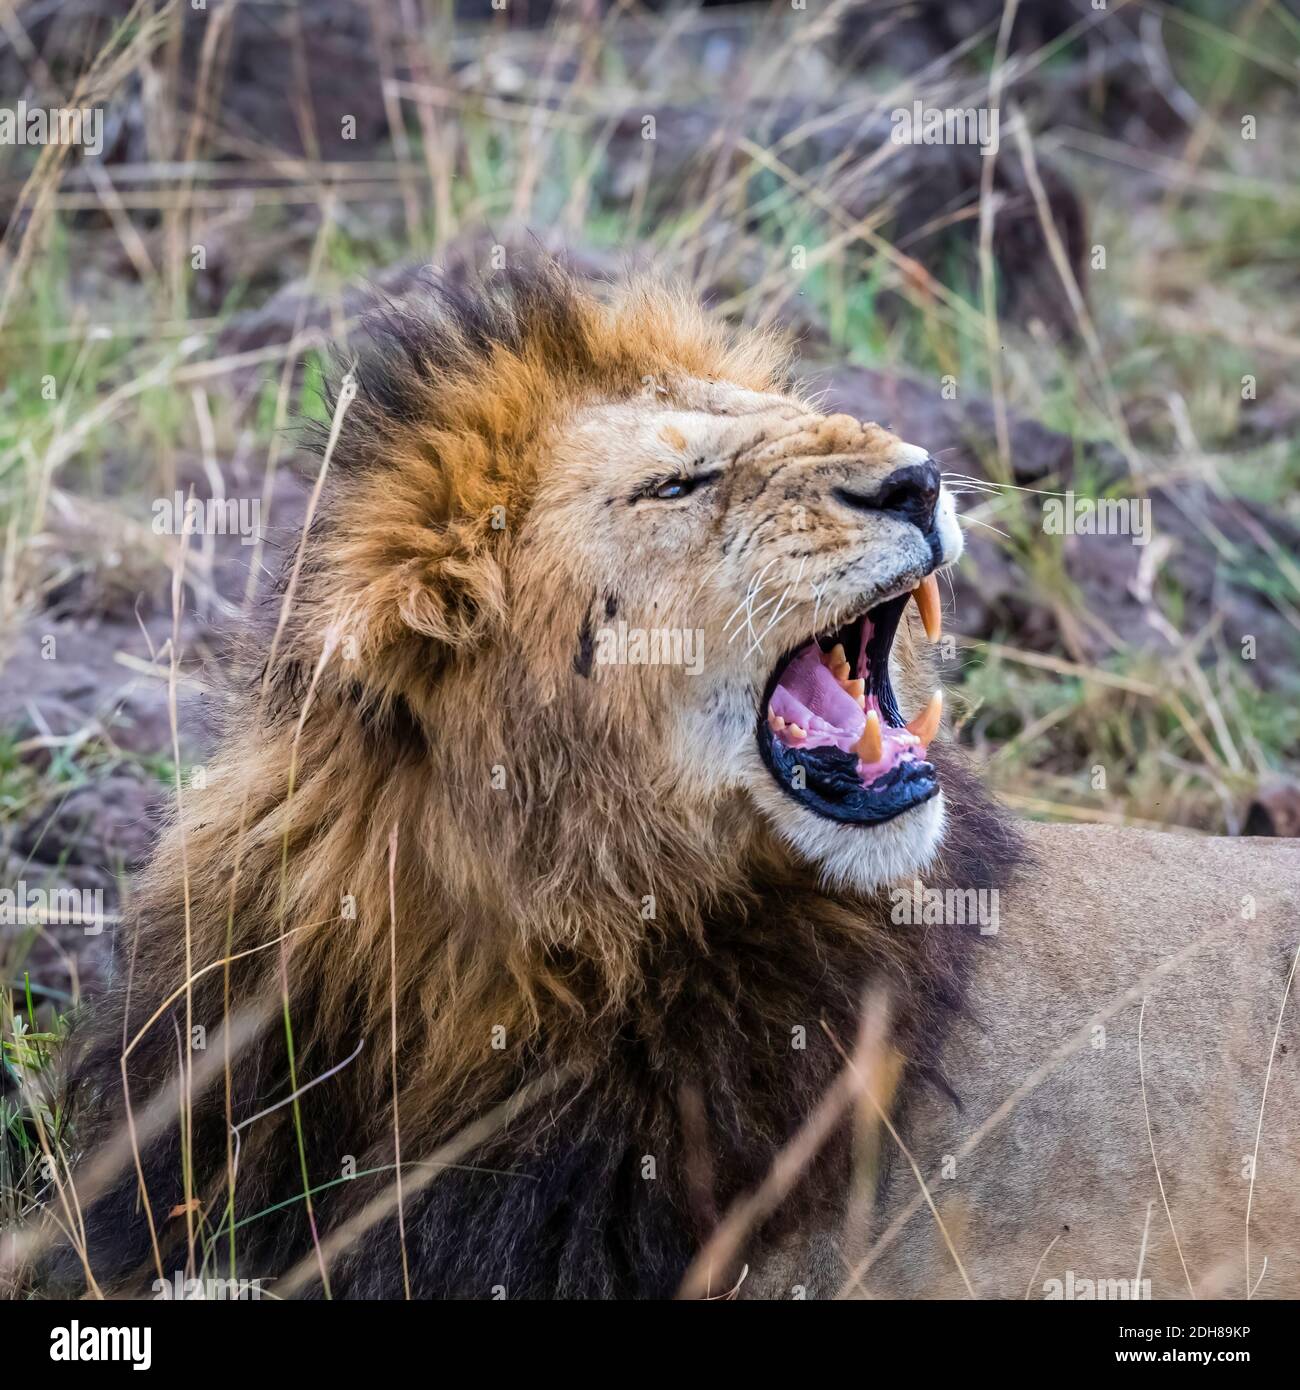 Le lion maara mâle agressif (Panthera leo) aboye ses dents comme il s'entaille, Masai Mara, Kenya. La dent canine supérieure droite est manquante. Banque D'Images